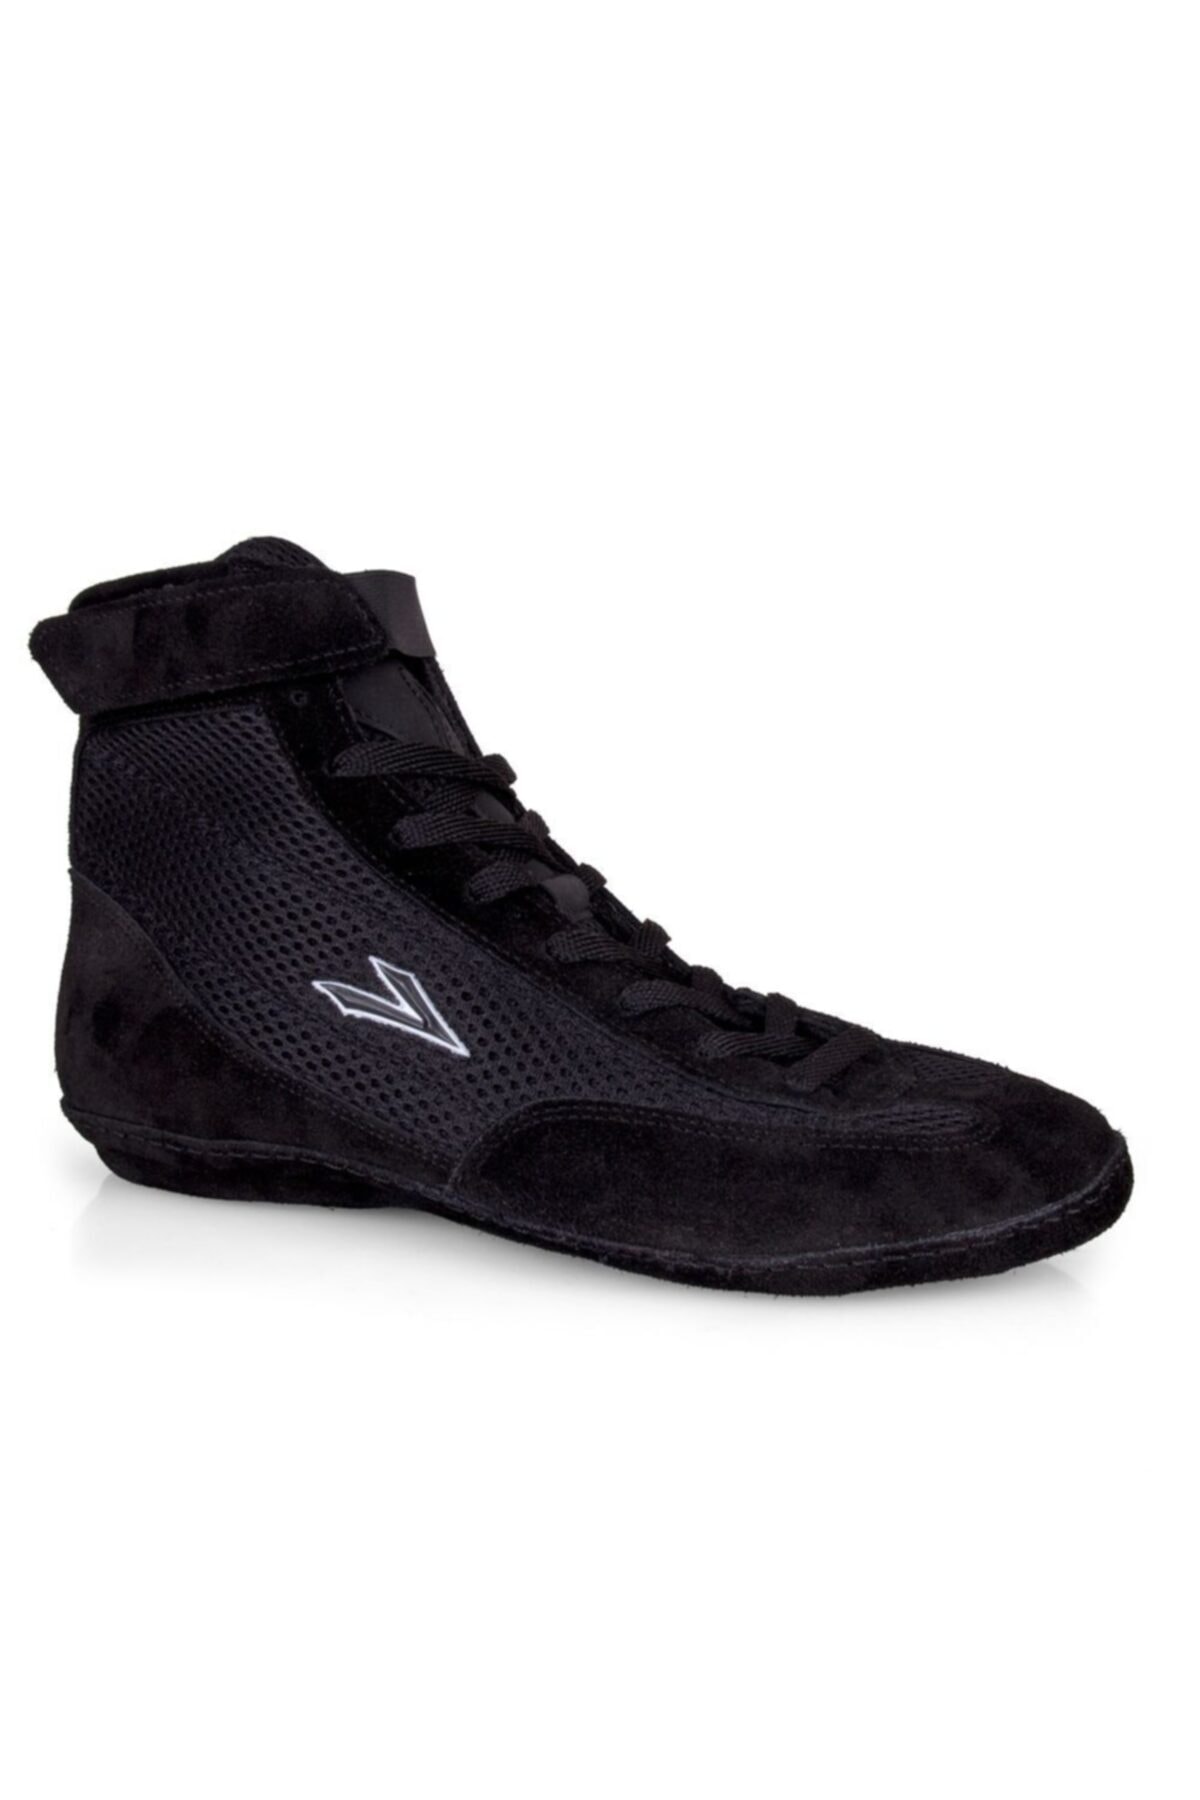 LIG Unisex Siyah Güreş Ayakkabısı